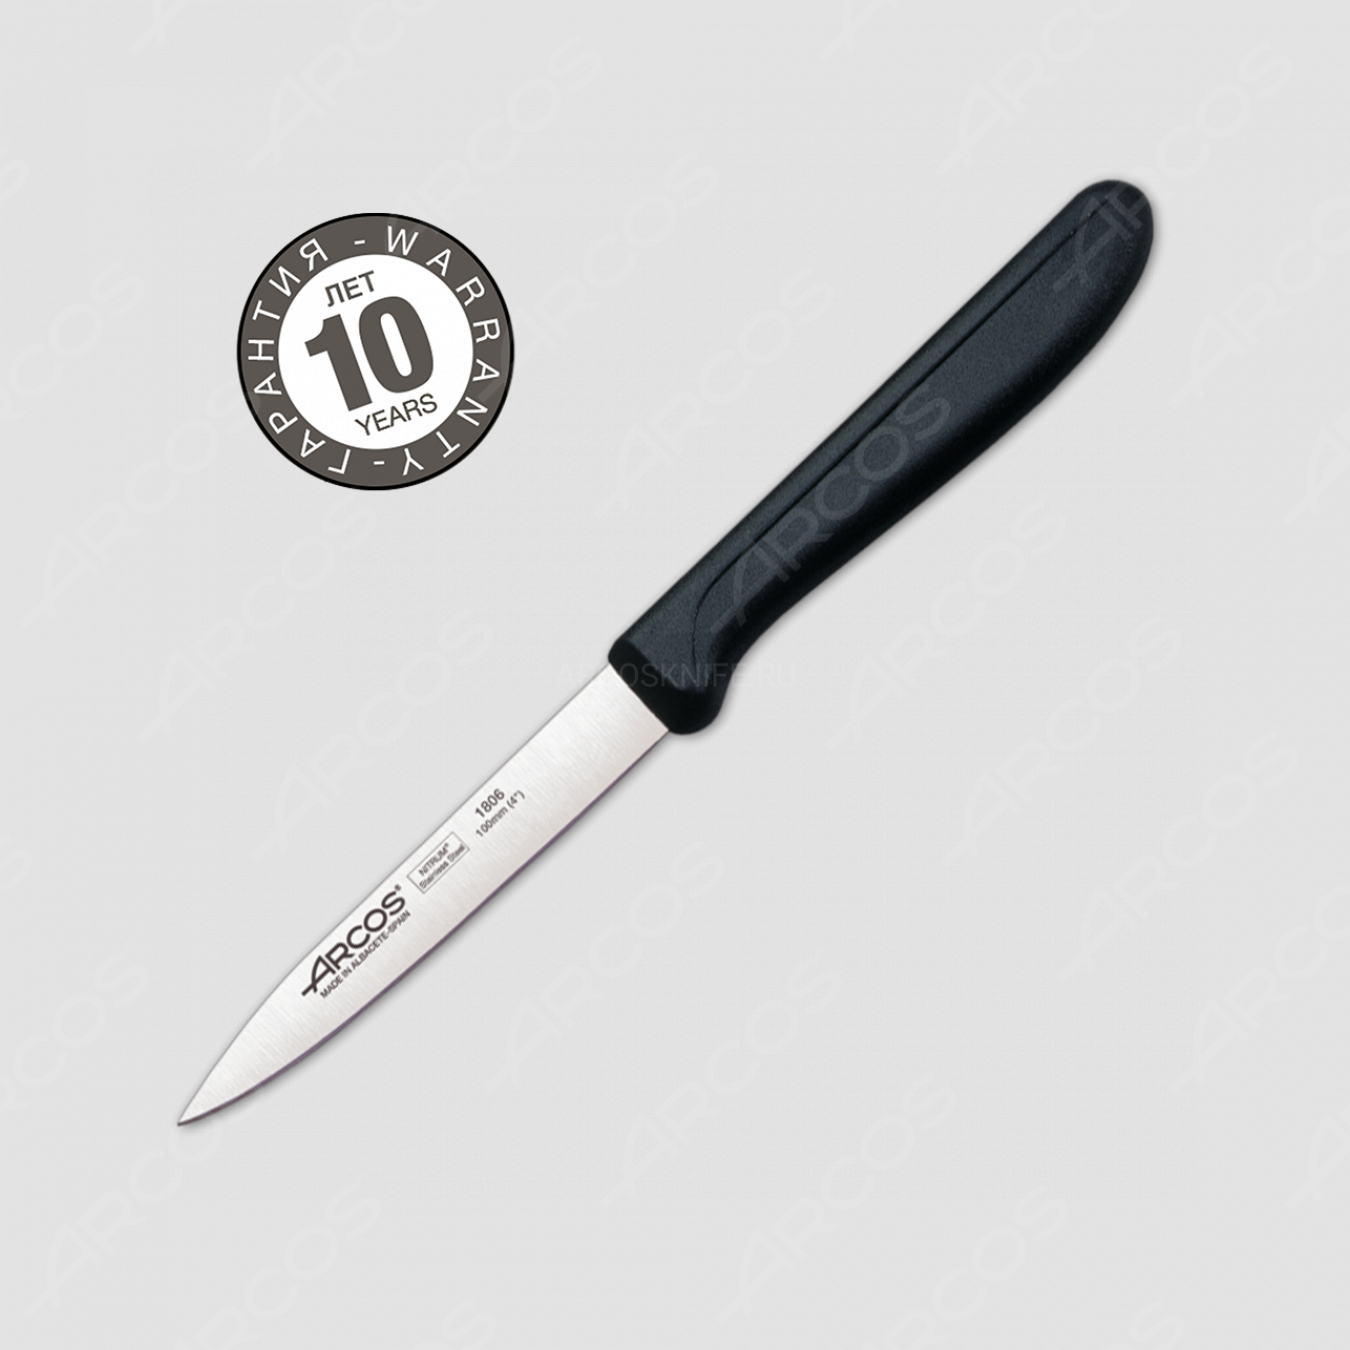 Нож кухонный для чистки 10 см, рукоять черная, серия Genova, ARCOS, Испания